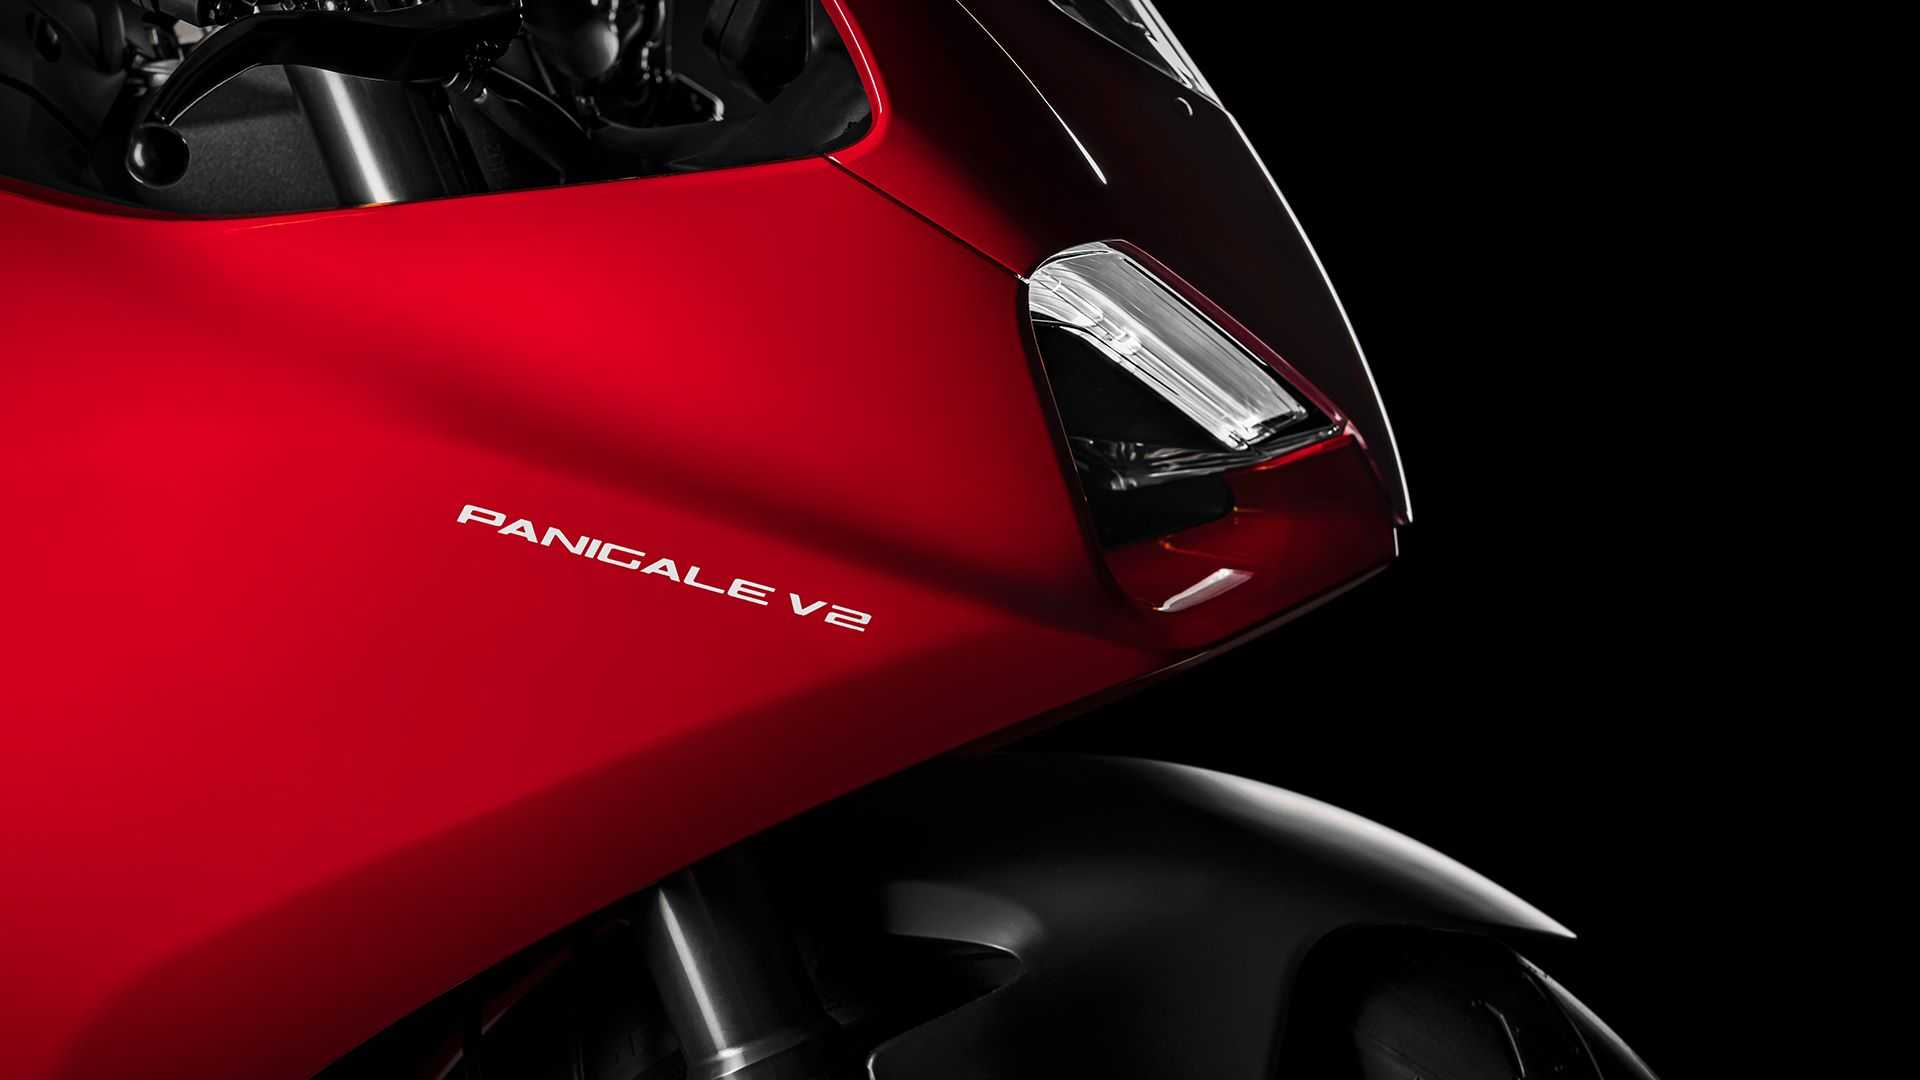 Here's the 2020 Ducati V2